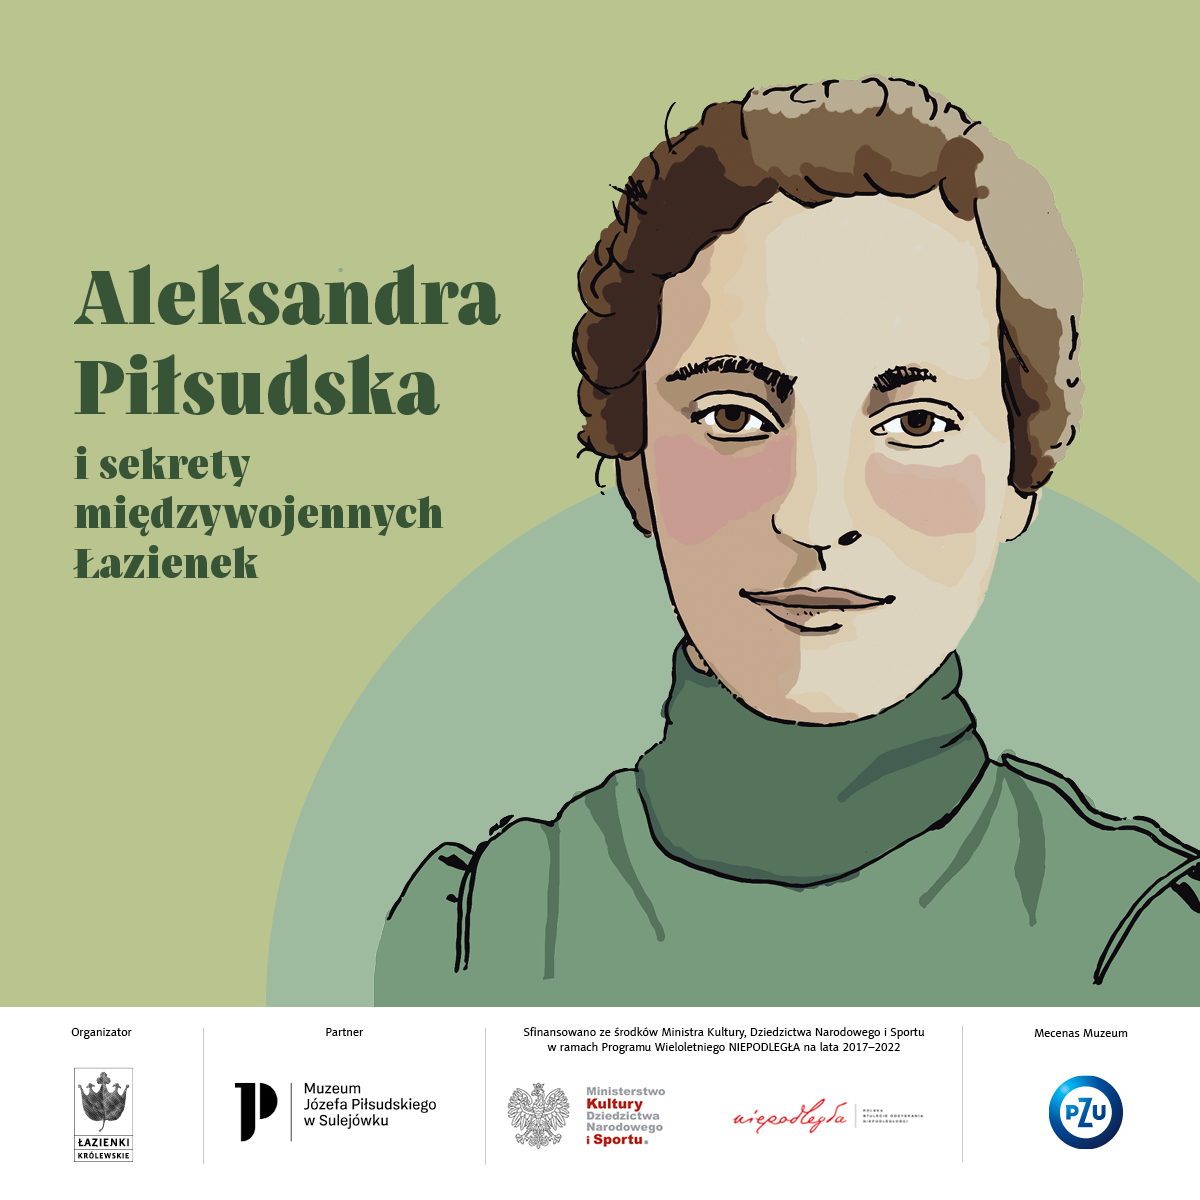 Przedstawienie twarzy kobiety inspirowane wizerunkiem Aleksandry Piłsudskiej. Obok tytuł projektu "Aleksandra Piłsudska i sekrety międzywojennych Łazienek"